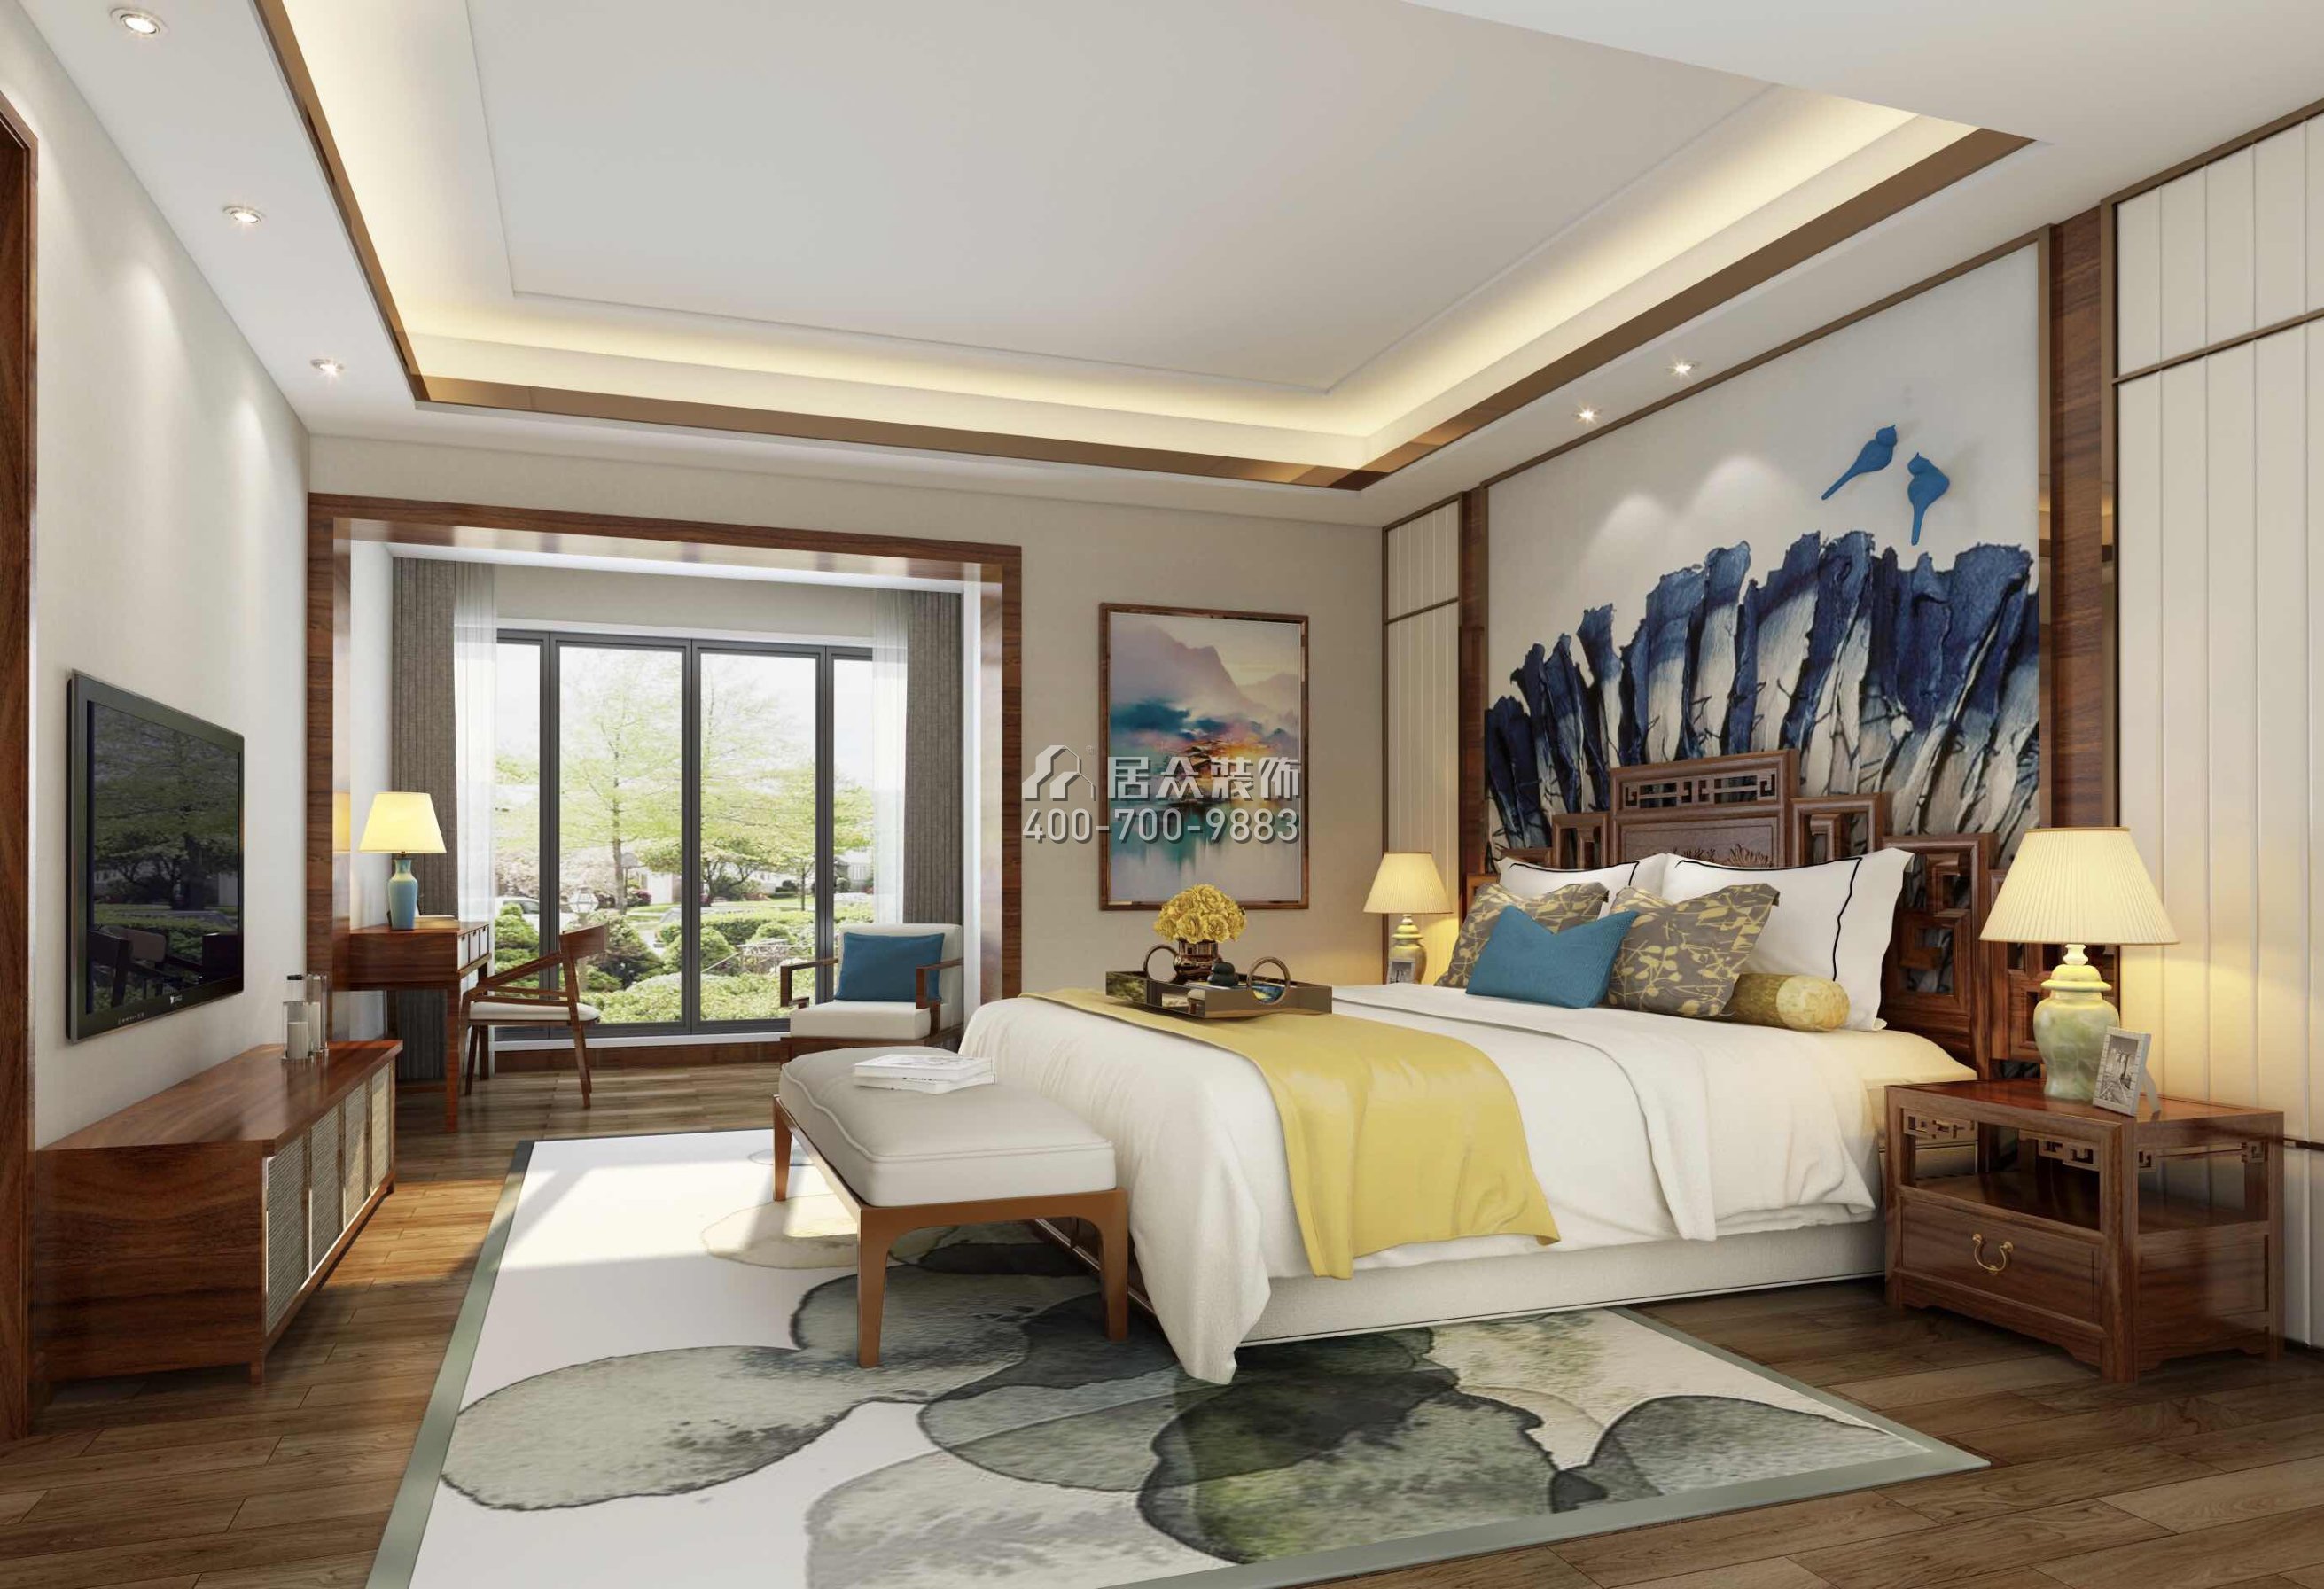 天驕華庭140平方米中式風格平層戶型臥室裝修效果圖